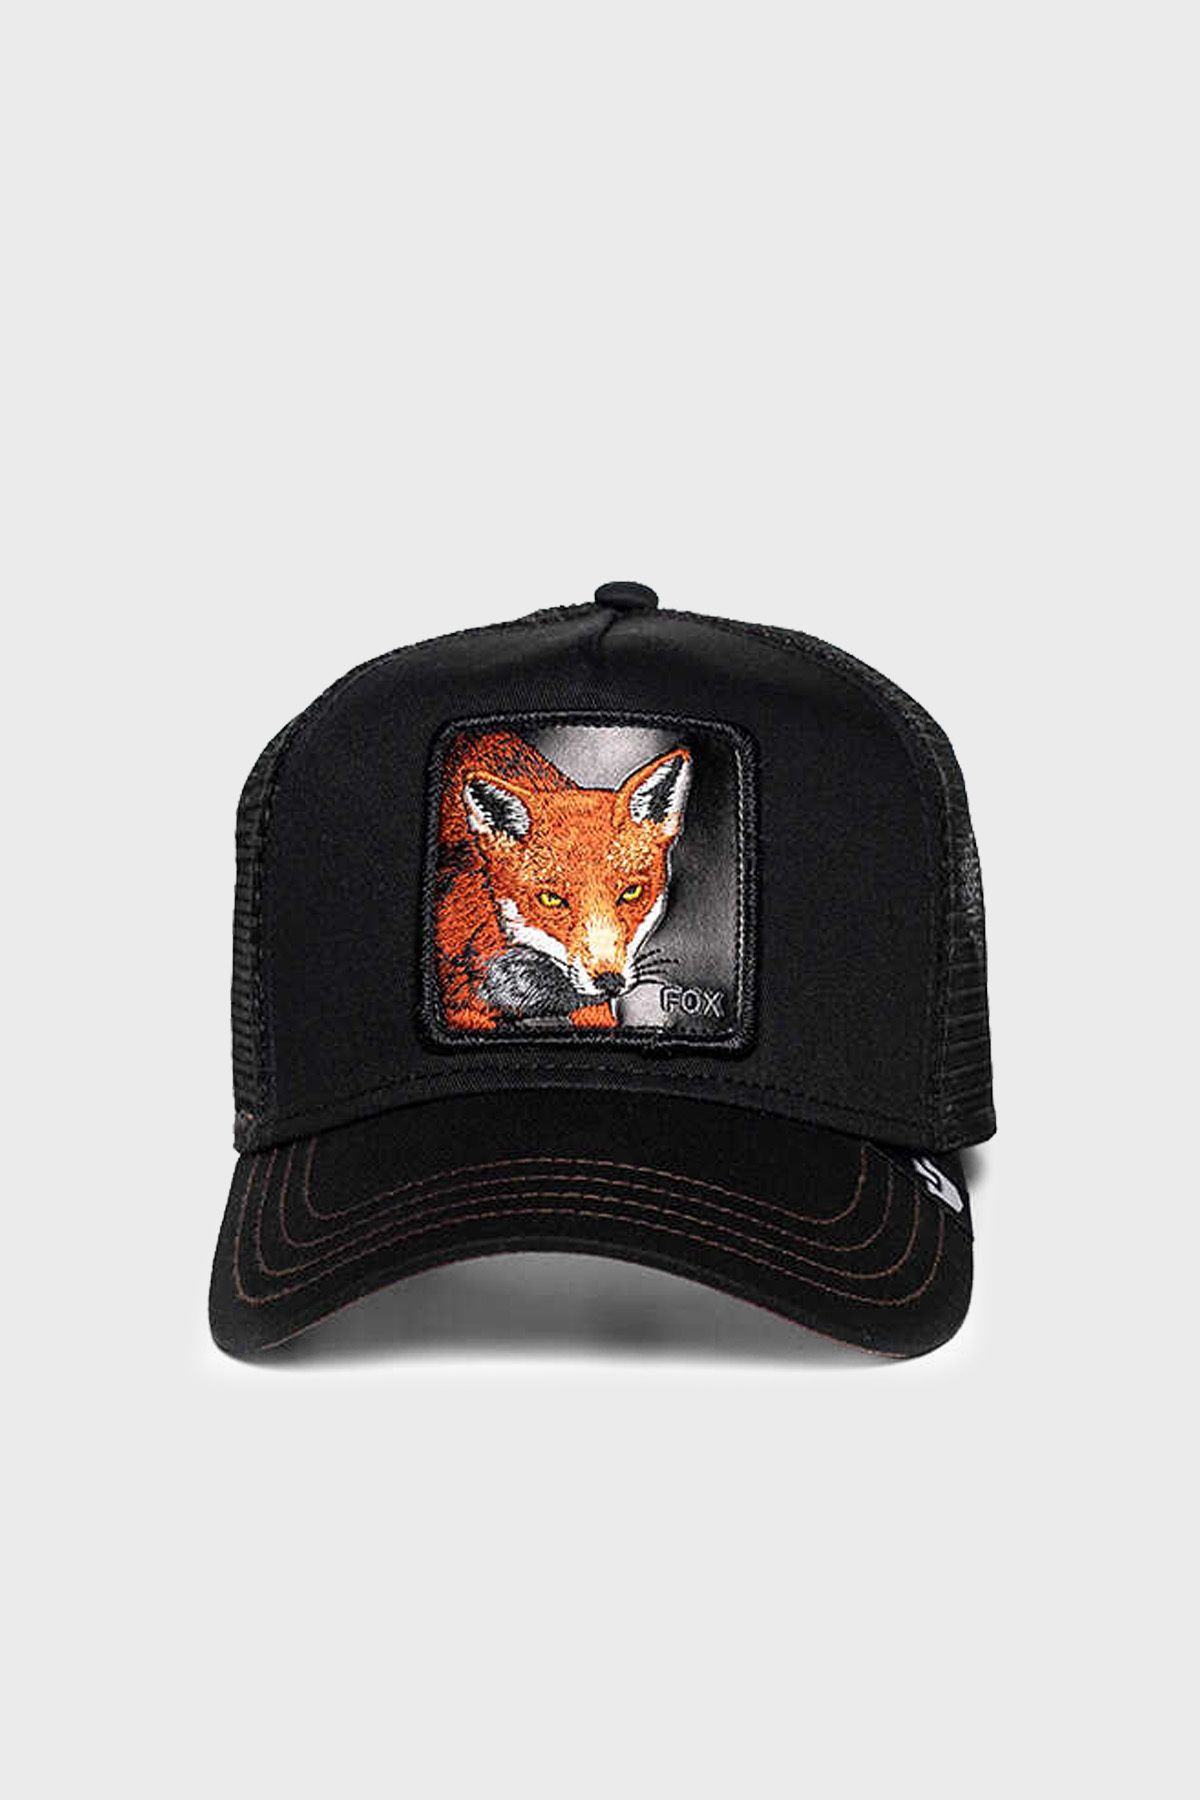 Goorin Bros 101-0528 The Fox Pamuklu File Detaylı Animal Desenli Şapka Unisex Şapka 1010528